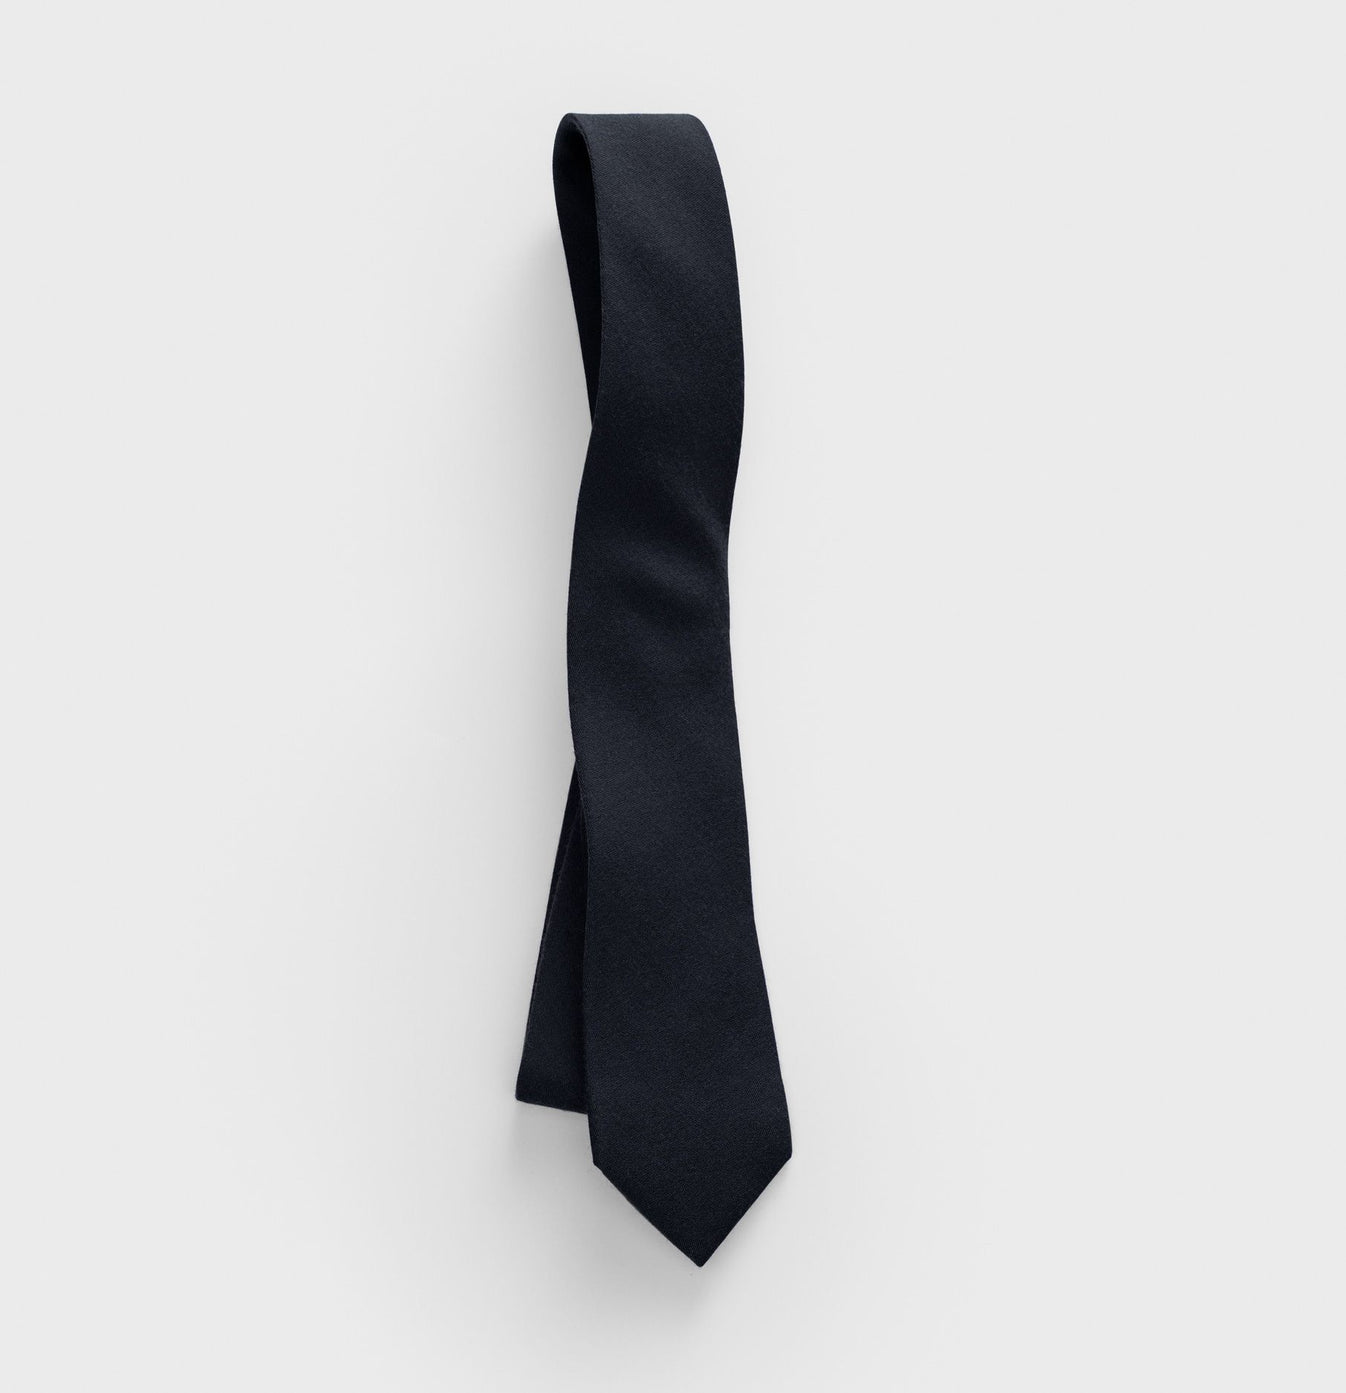 Black Cotton Necktie